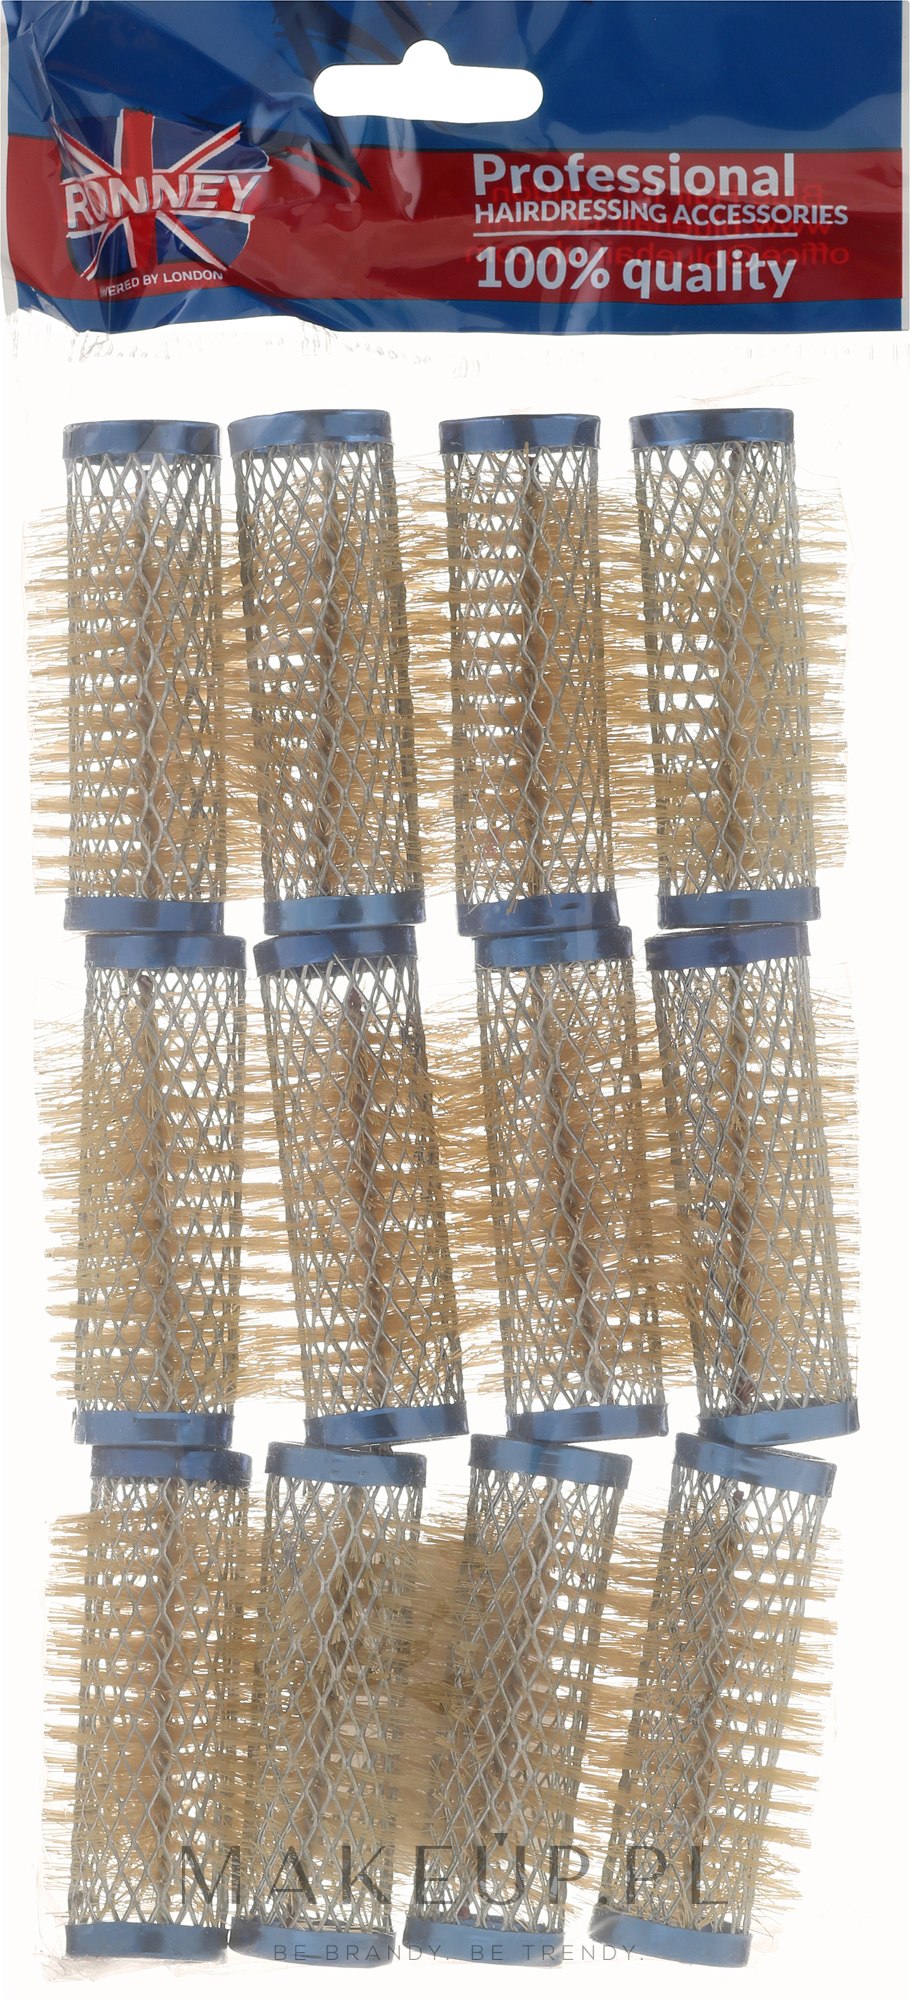 Wałki 21/63 mm, niebieskie - Ronney Professional Wire Curlers — Zdjęcie 12 szt.